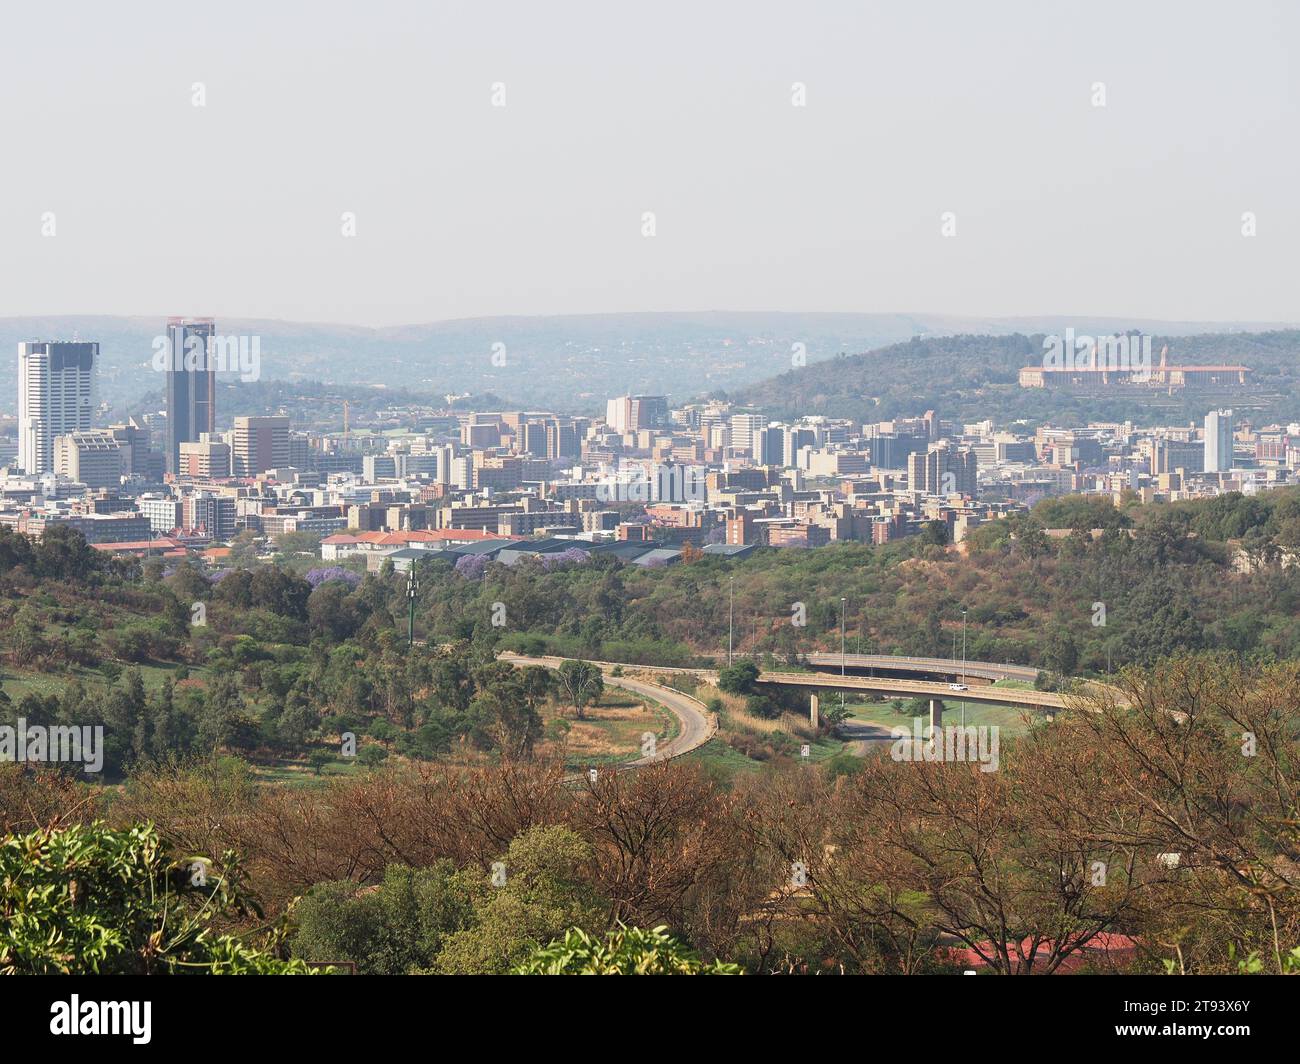 La città di Pretoria, la capitale amministrativa, vista da lontano con autostrade e natura in primo piano. Pretoria, Gauteng, Sudafrica. Foto Stock